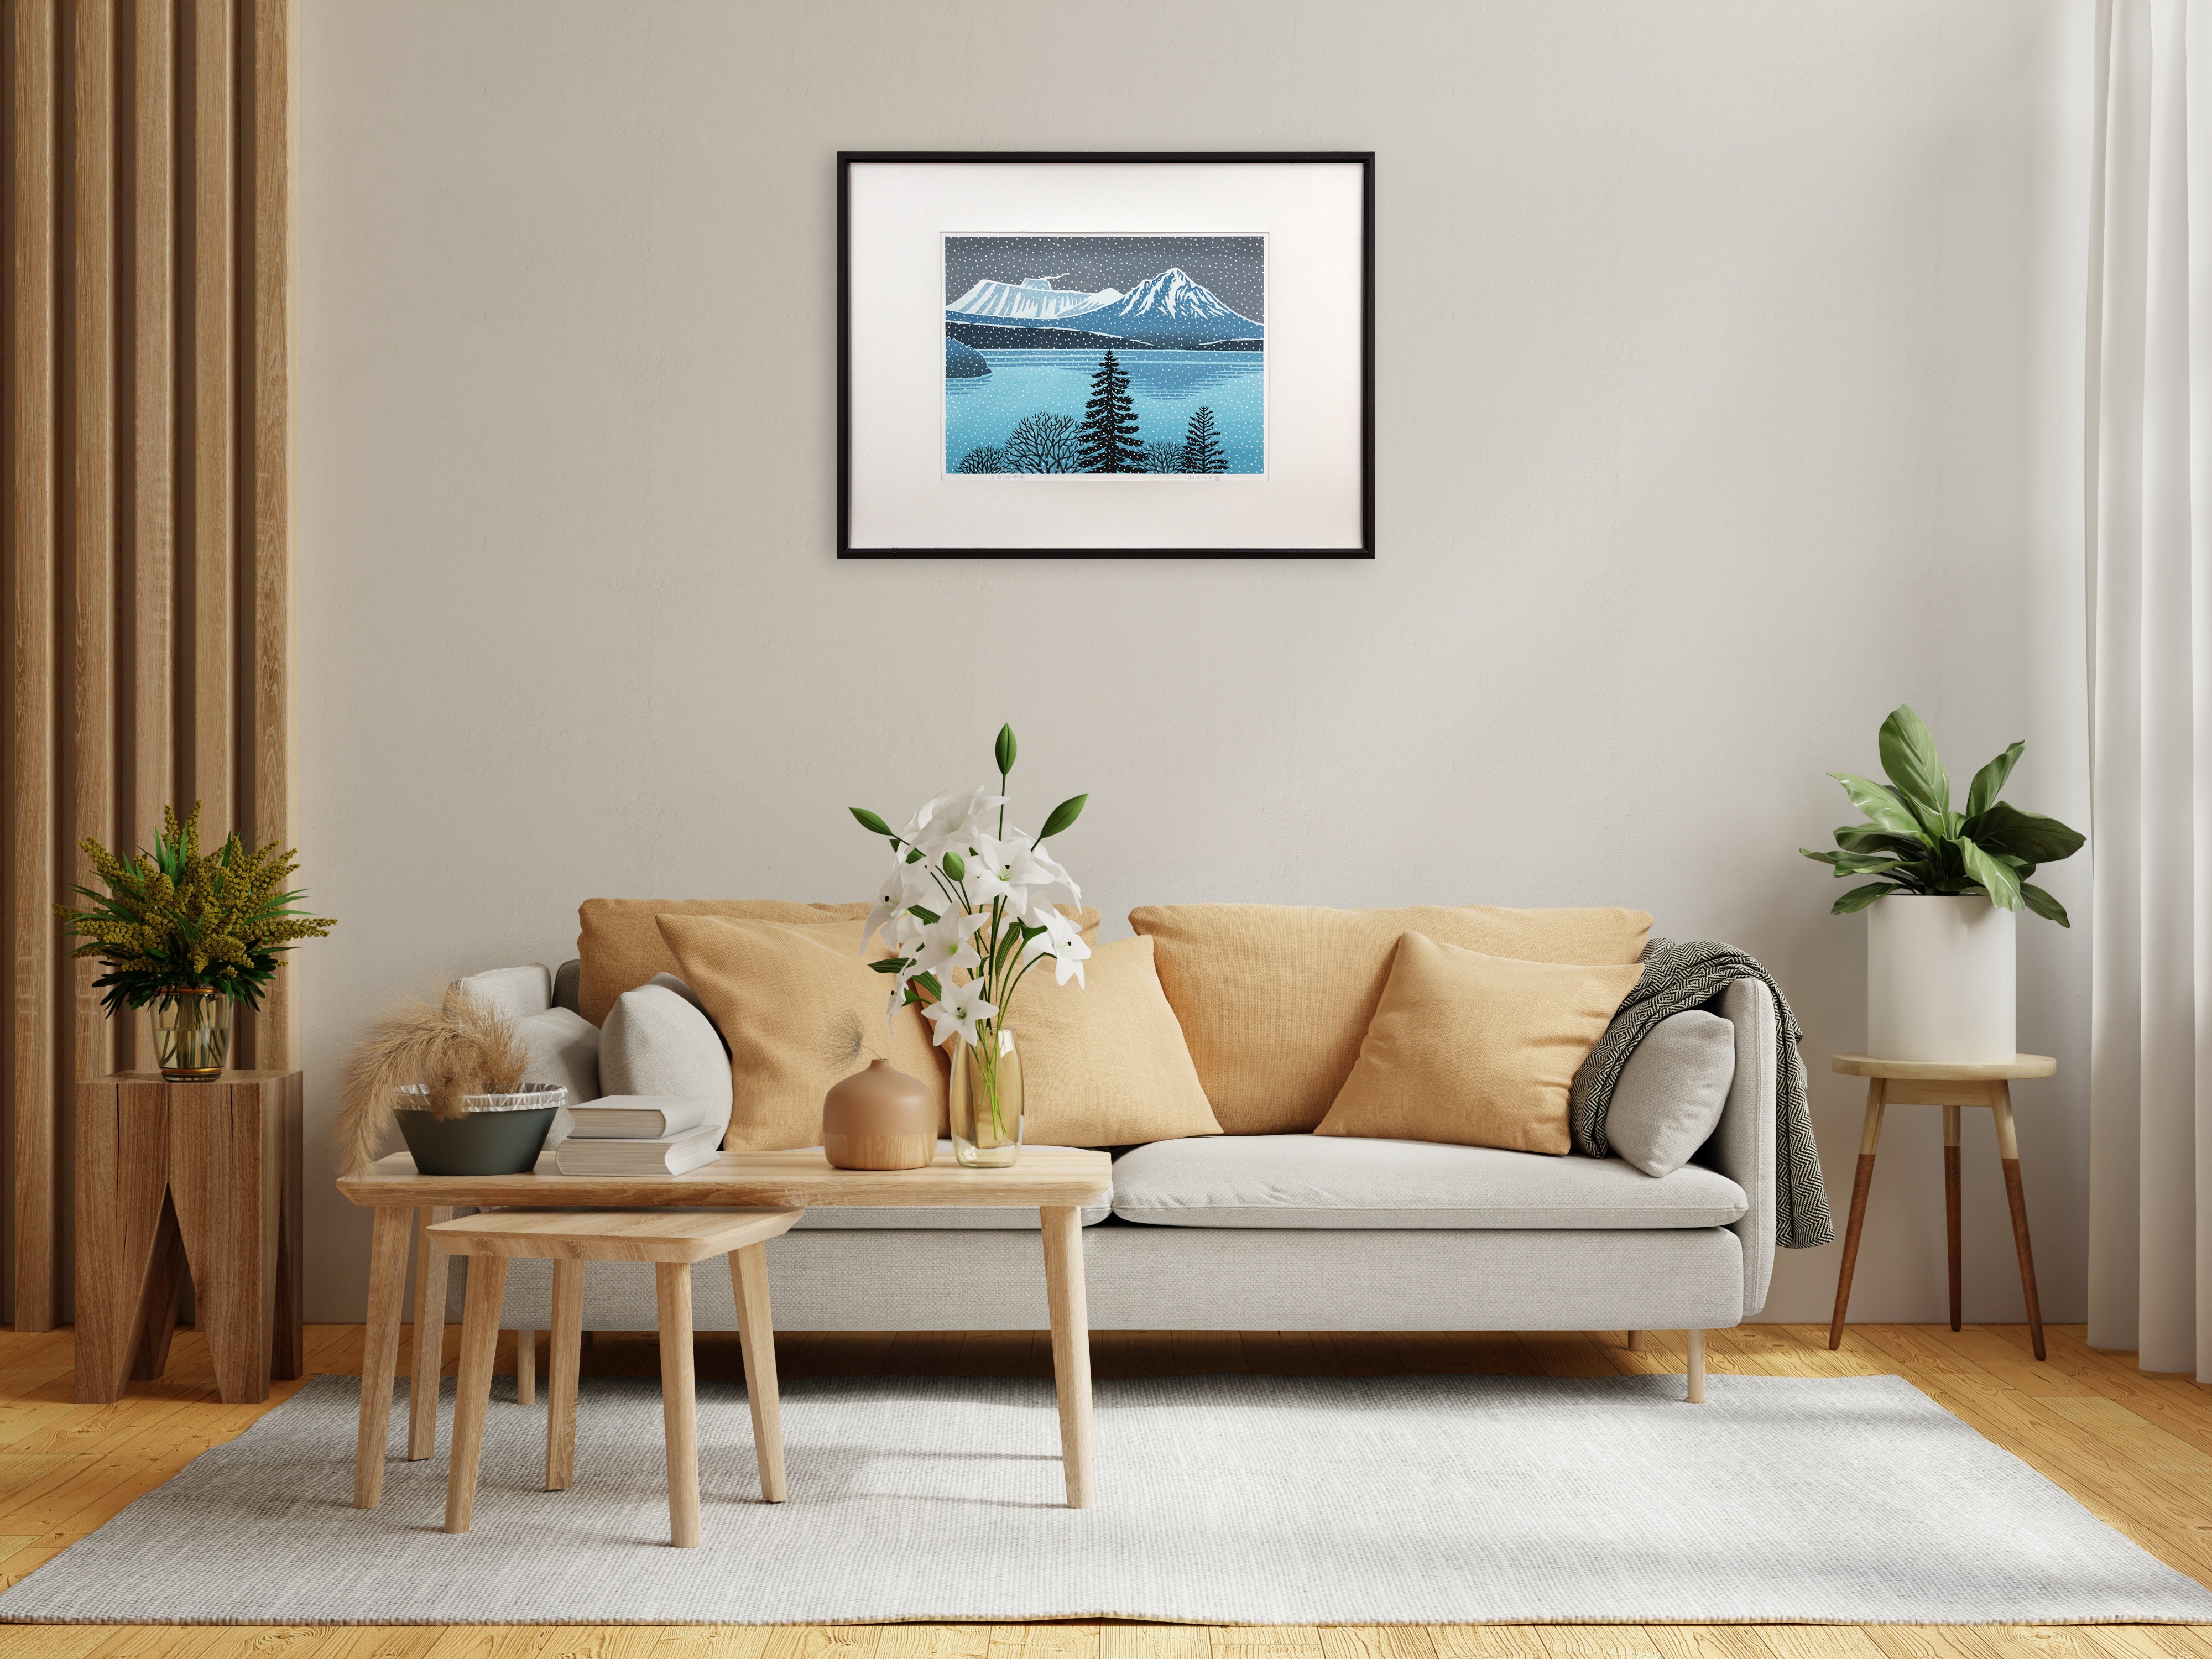 松見八百造 『支笏湖雪景』 木版画 - 北海道画廊